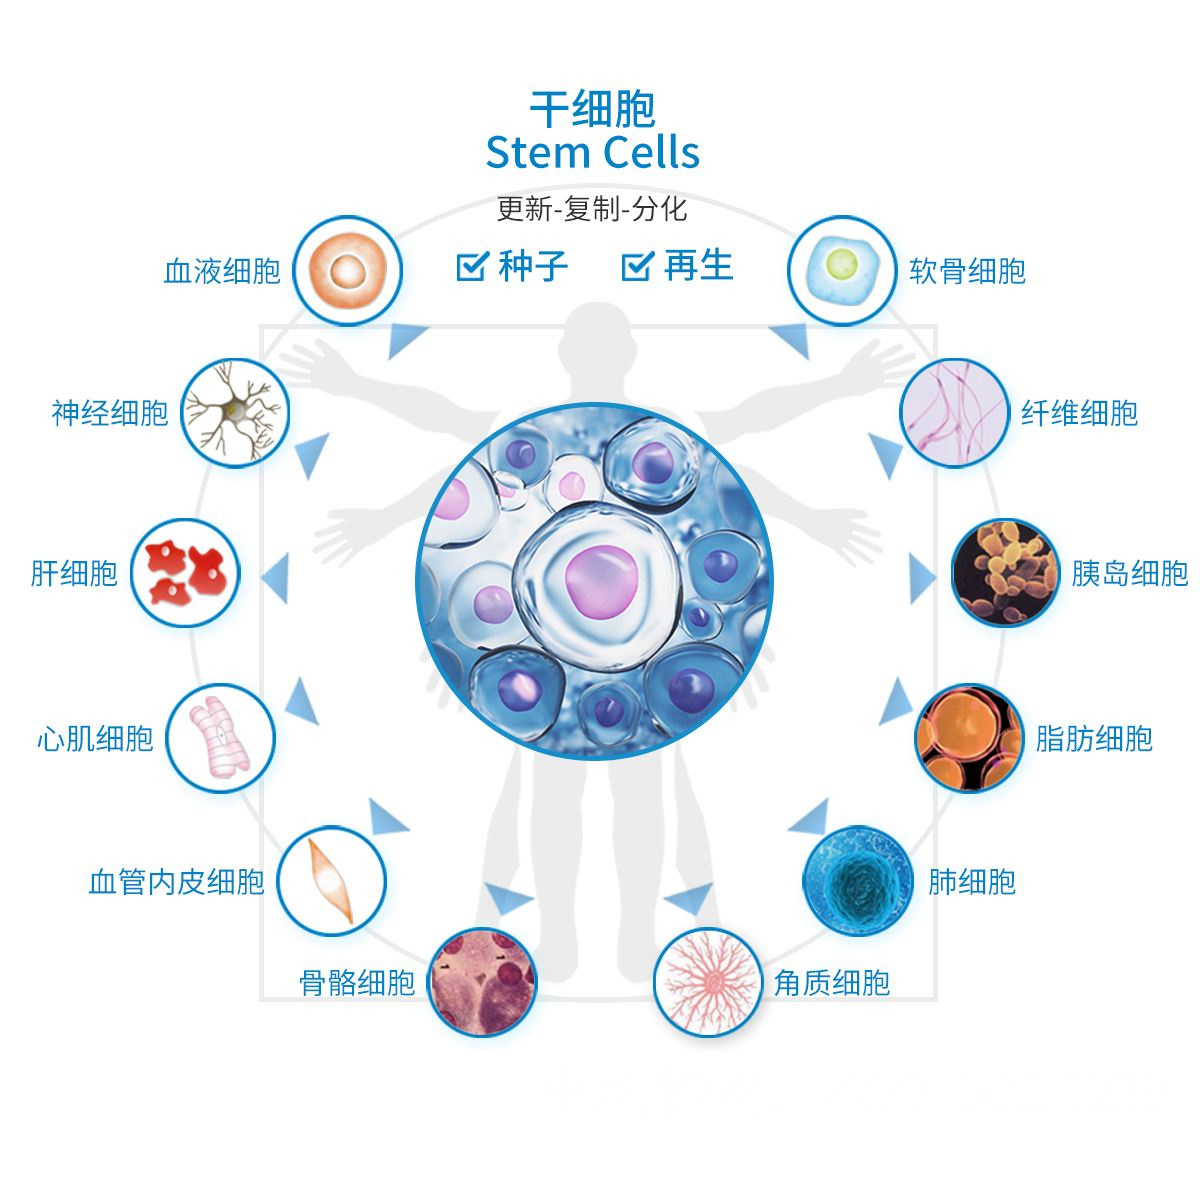 北京治疗肿瘤的医院-中科物谷干细胞